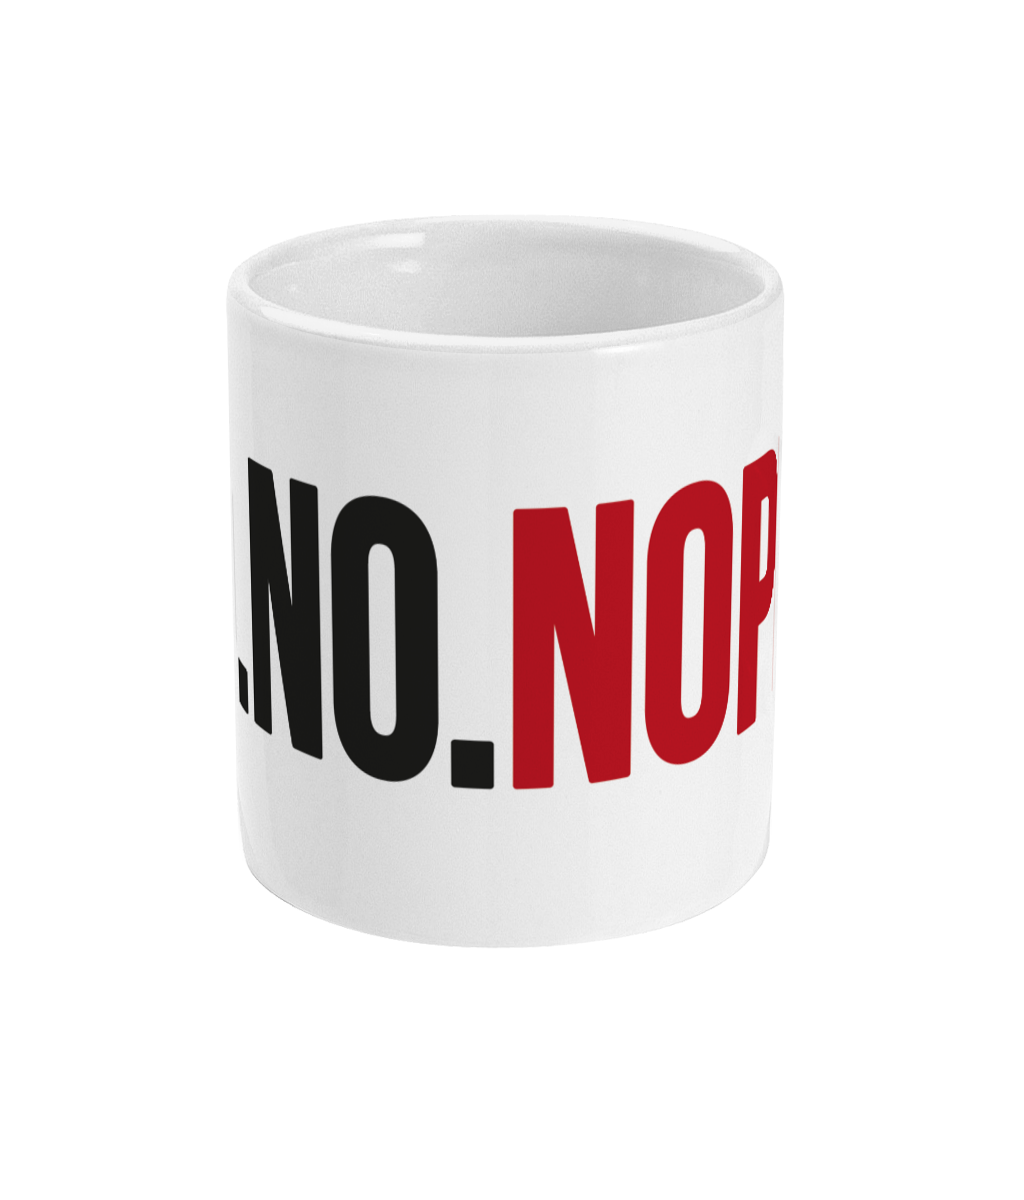 Funny cup, mug  - states No. No. Nope.